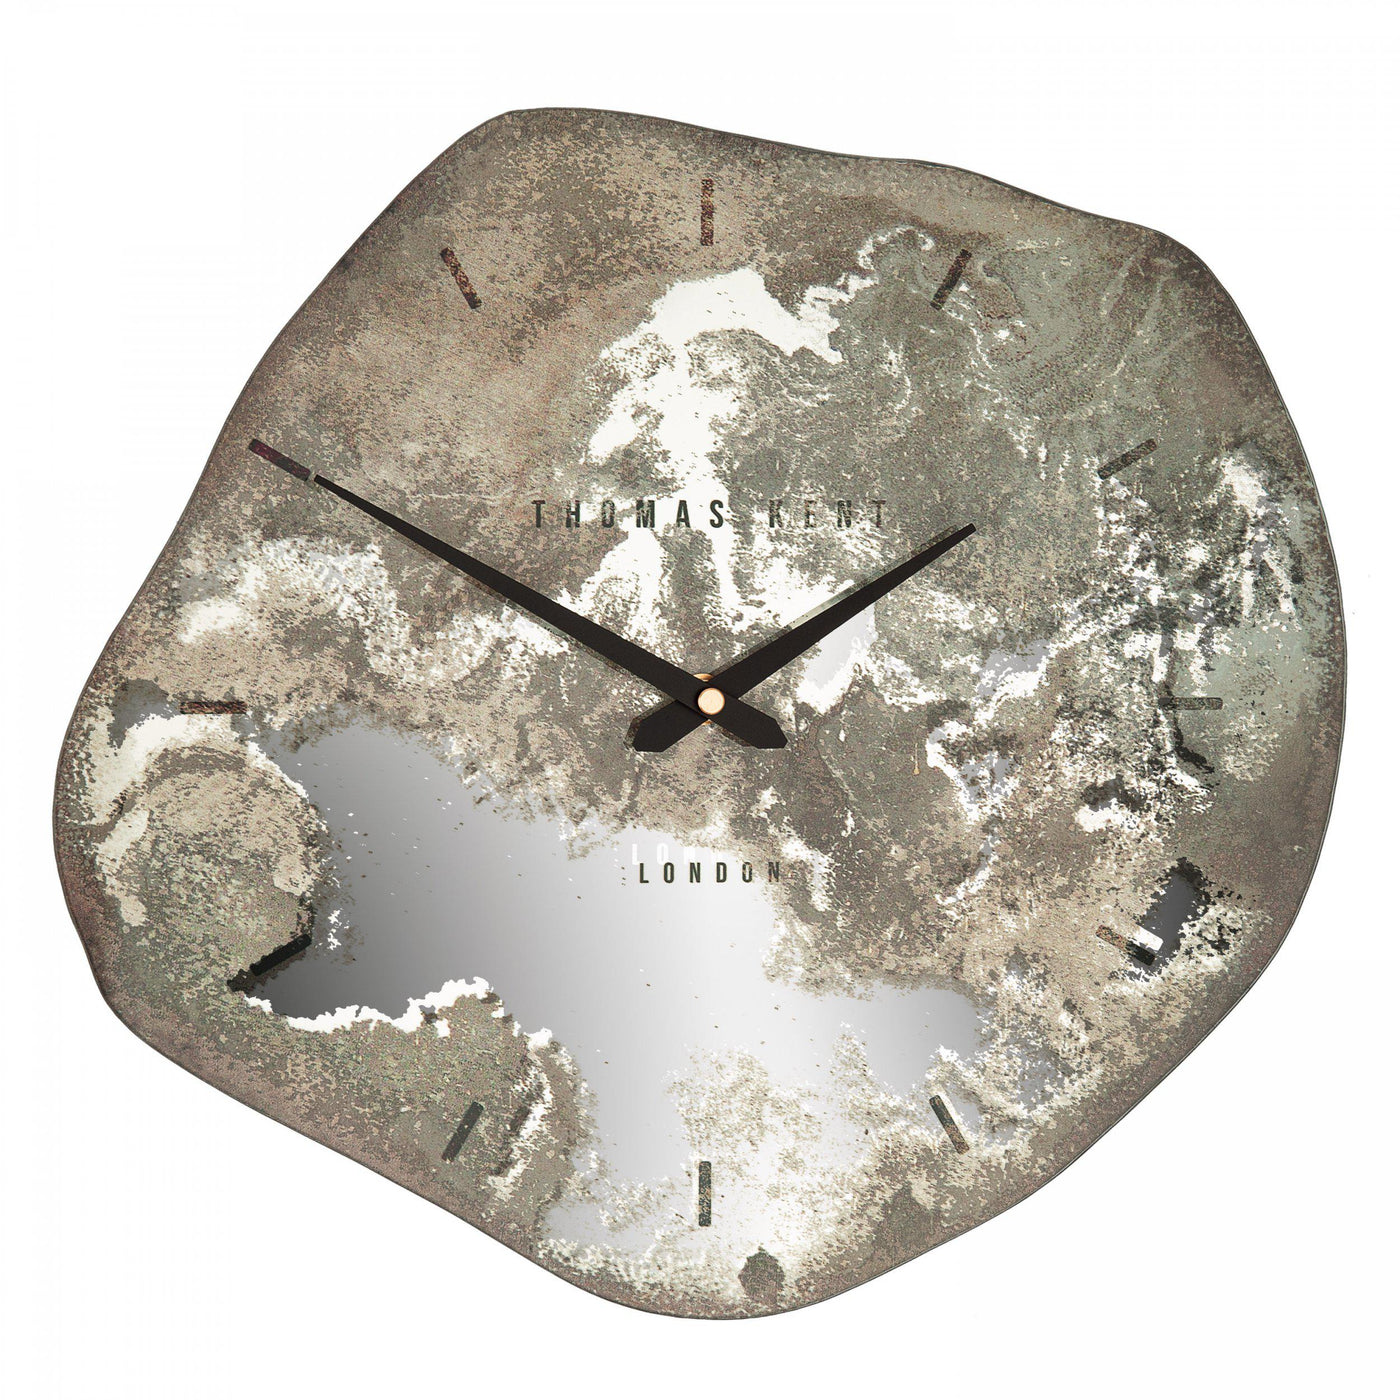 Thomas Kent London. Jewel Wall Clock Stone *NEW* - timeframedclocks